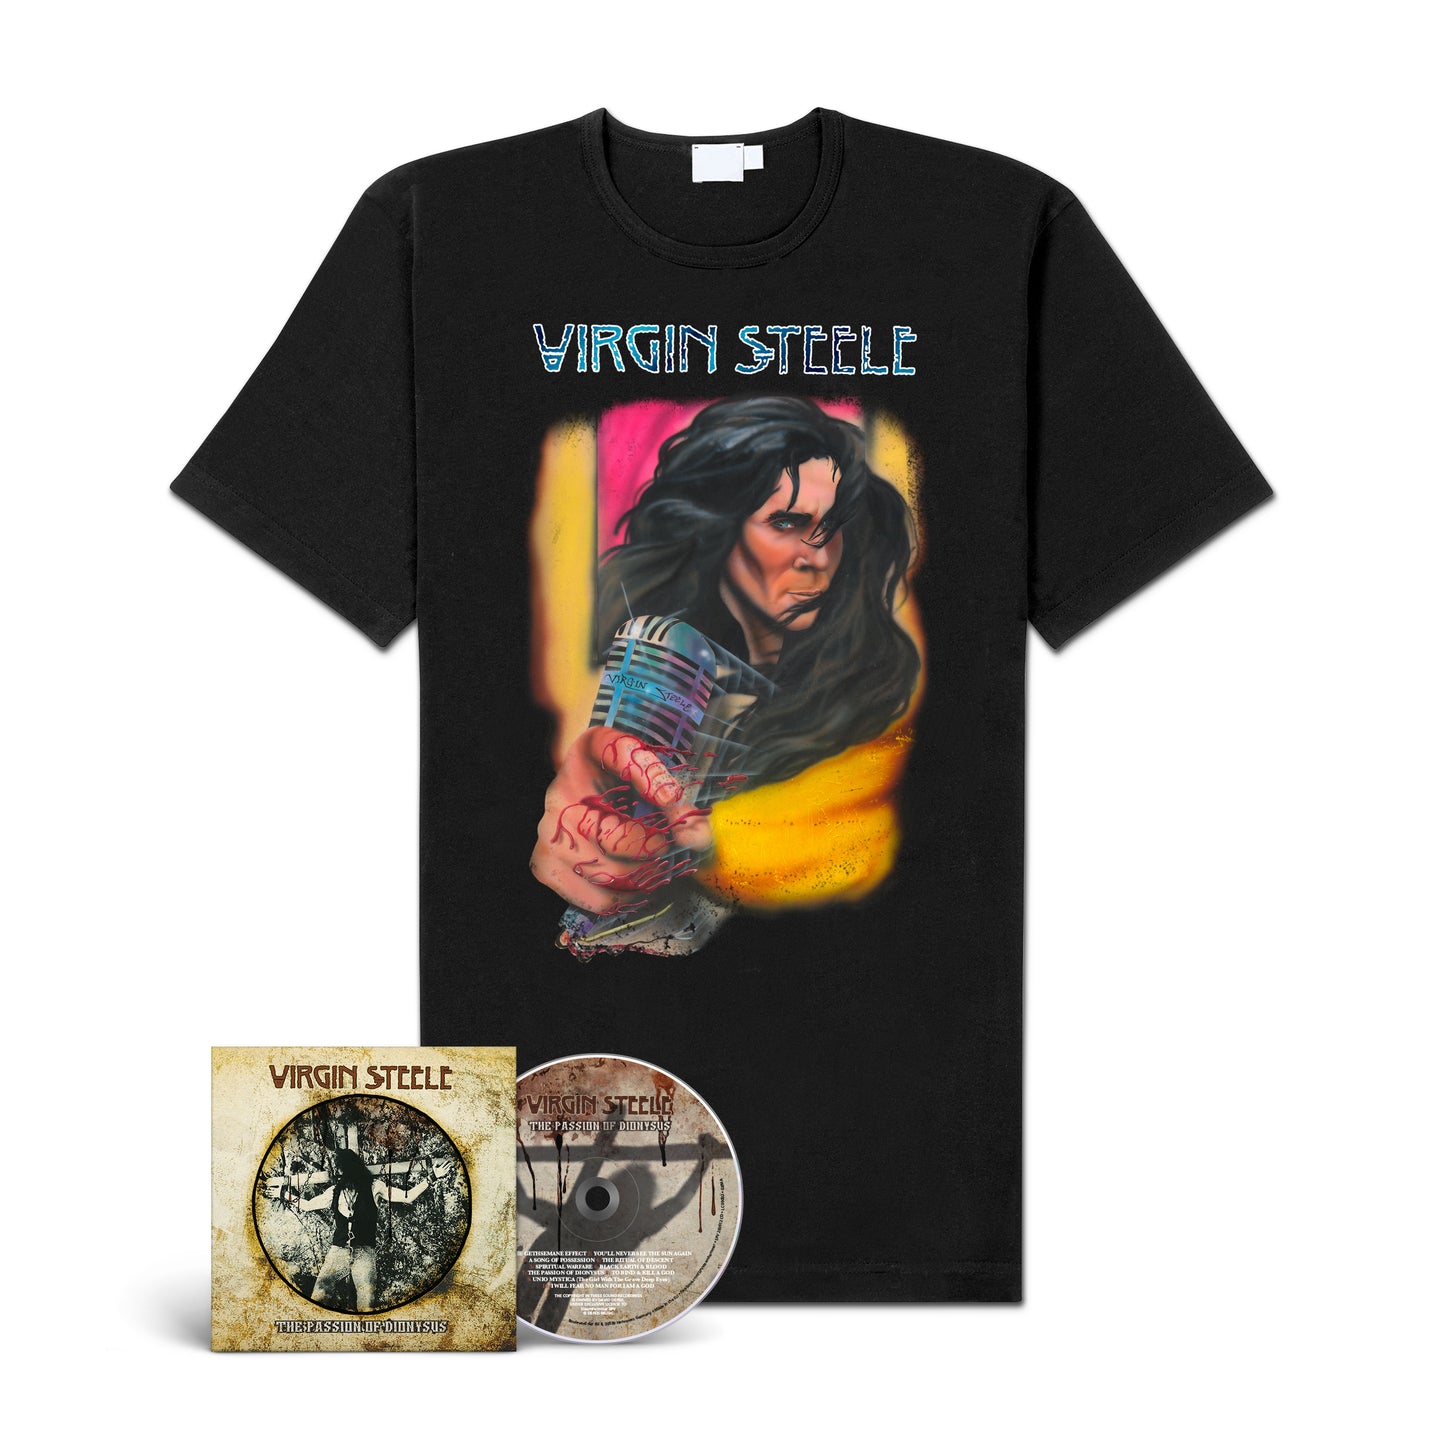 Virgin Steele "The Passion Of Dionysus" CD-Bundle